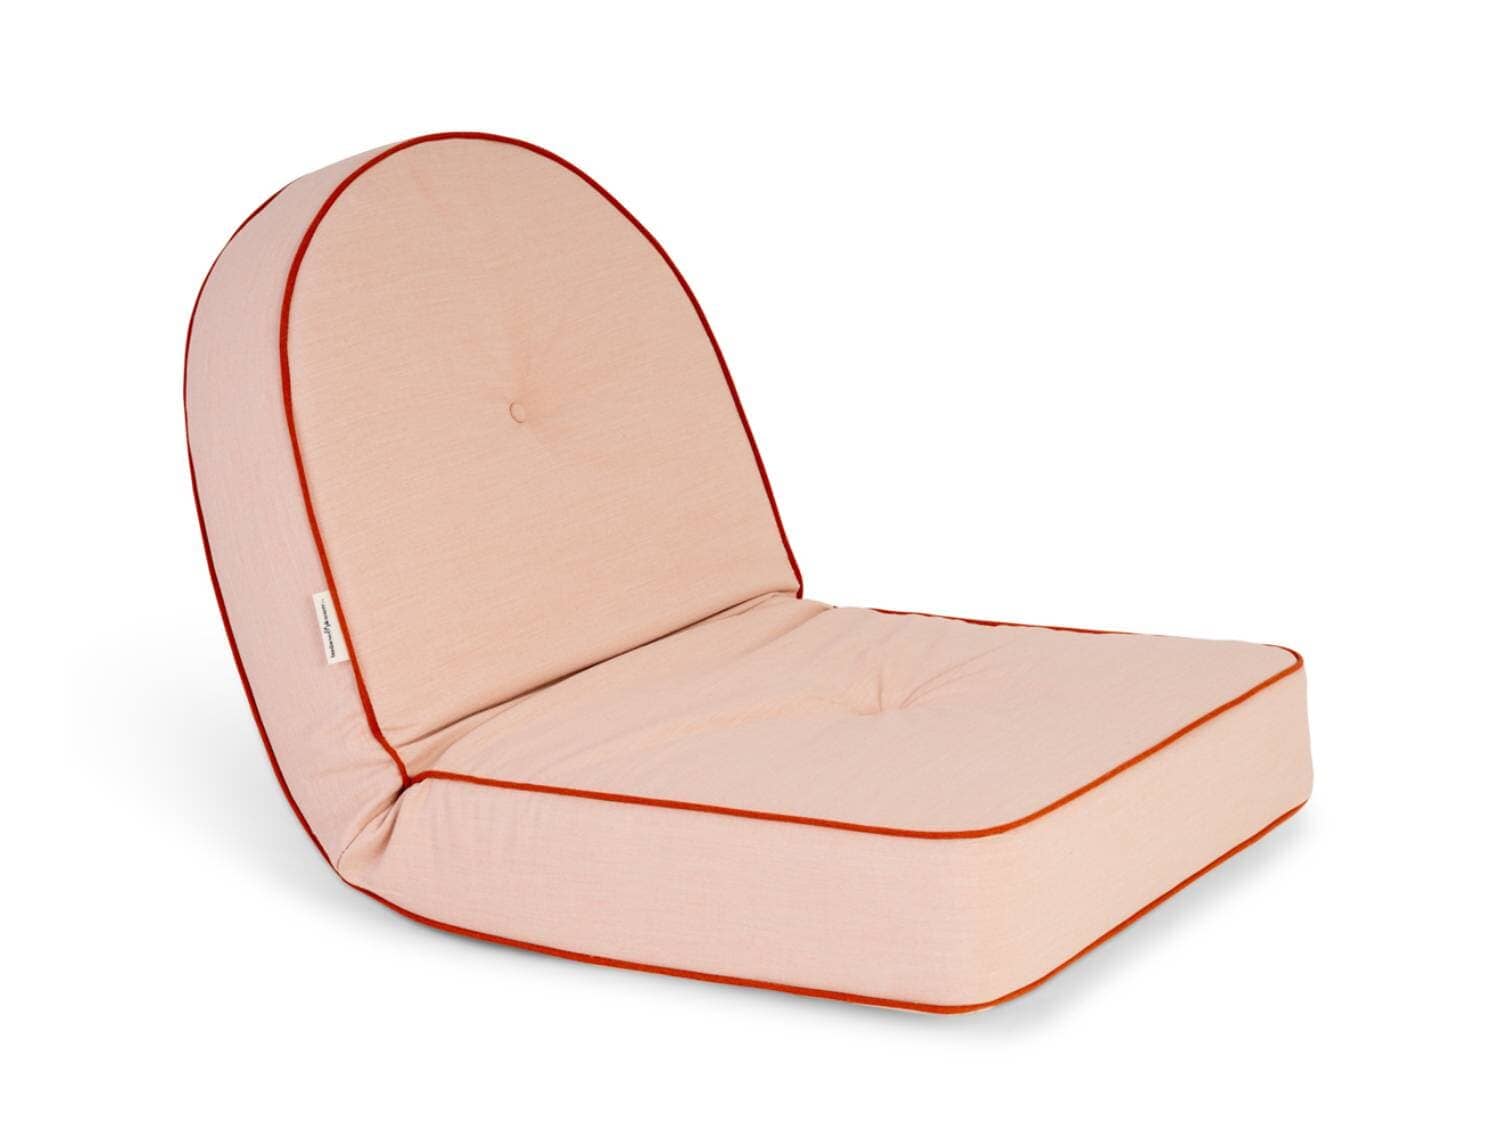 The Reclining Pillow Lounger - Rivie Pink Reclining Pillow Lounger Business & Pleasure Co Aus 